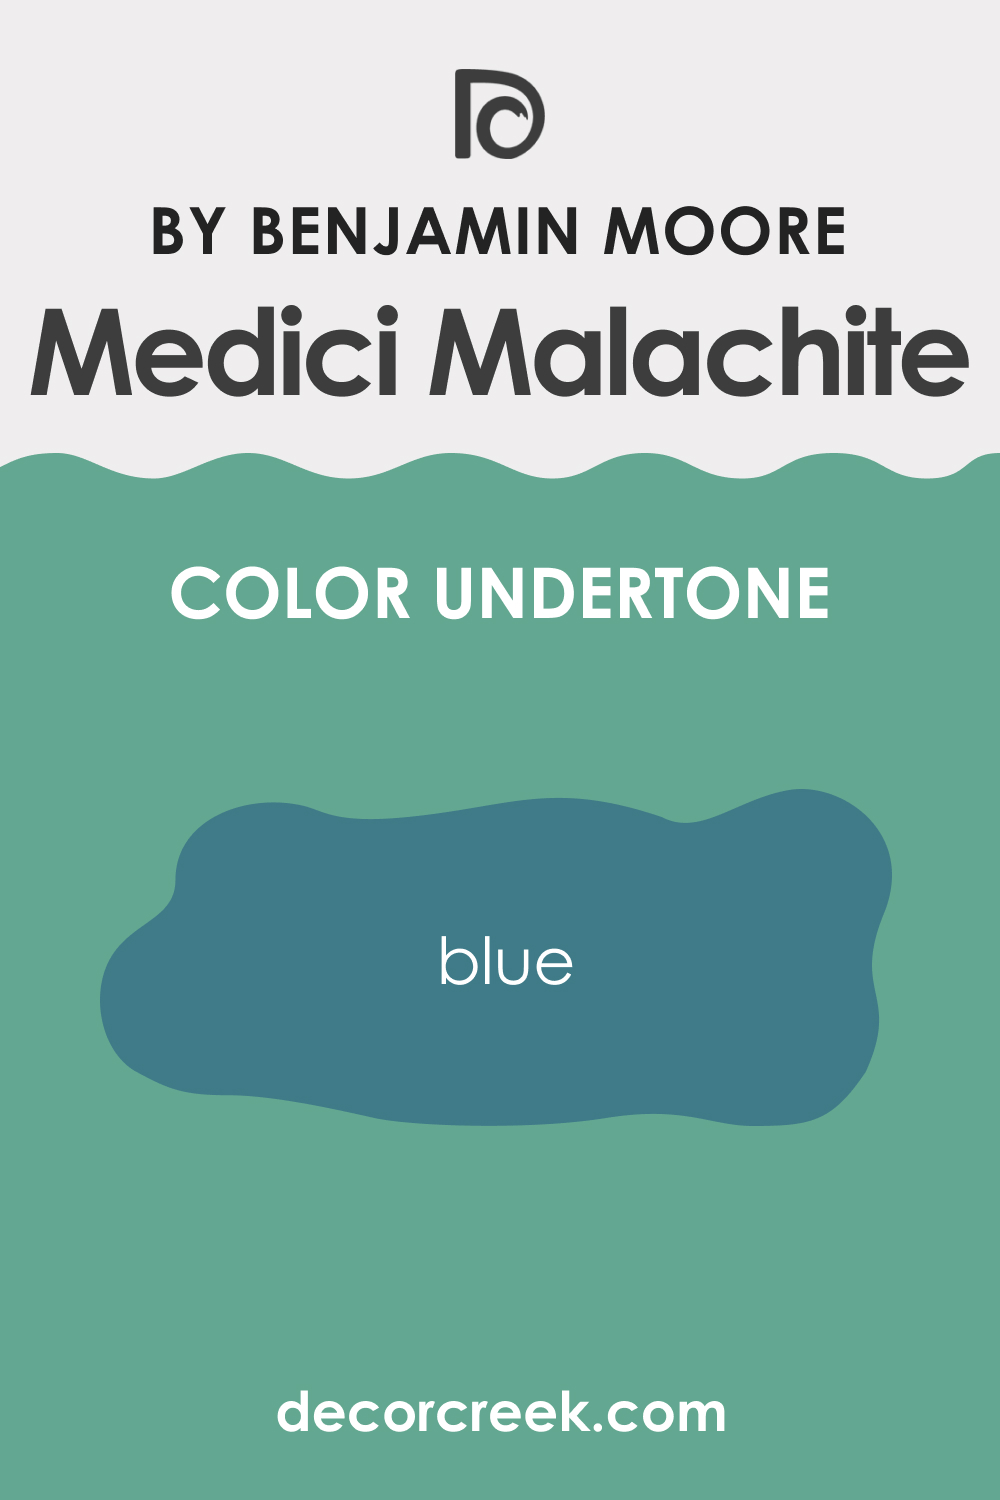 Undertones of Medici Malachite 600